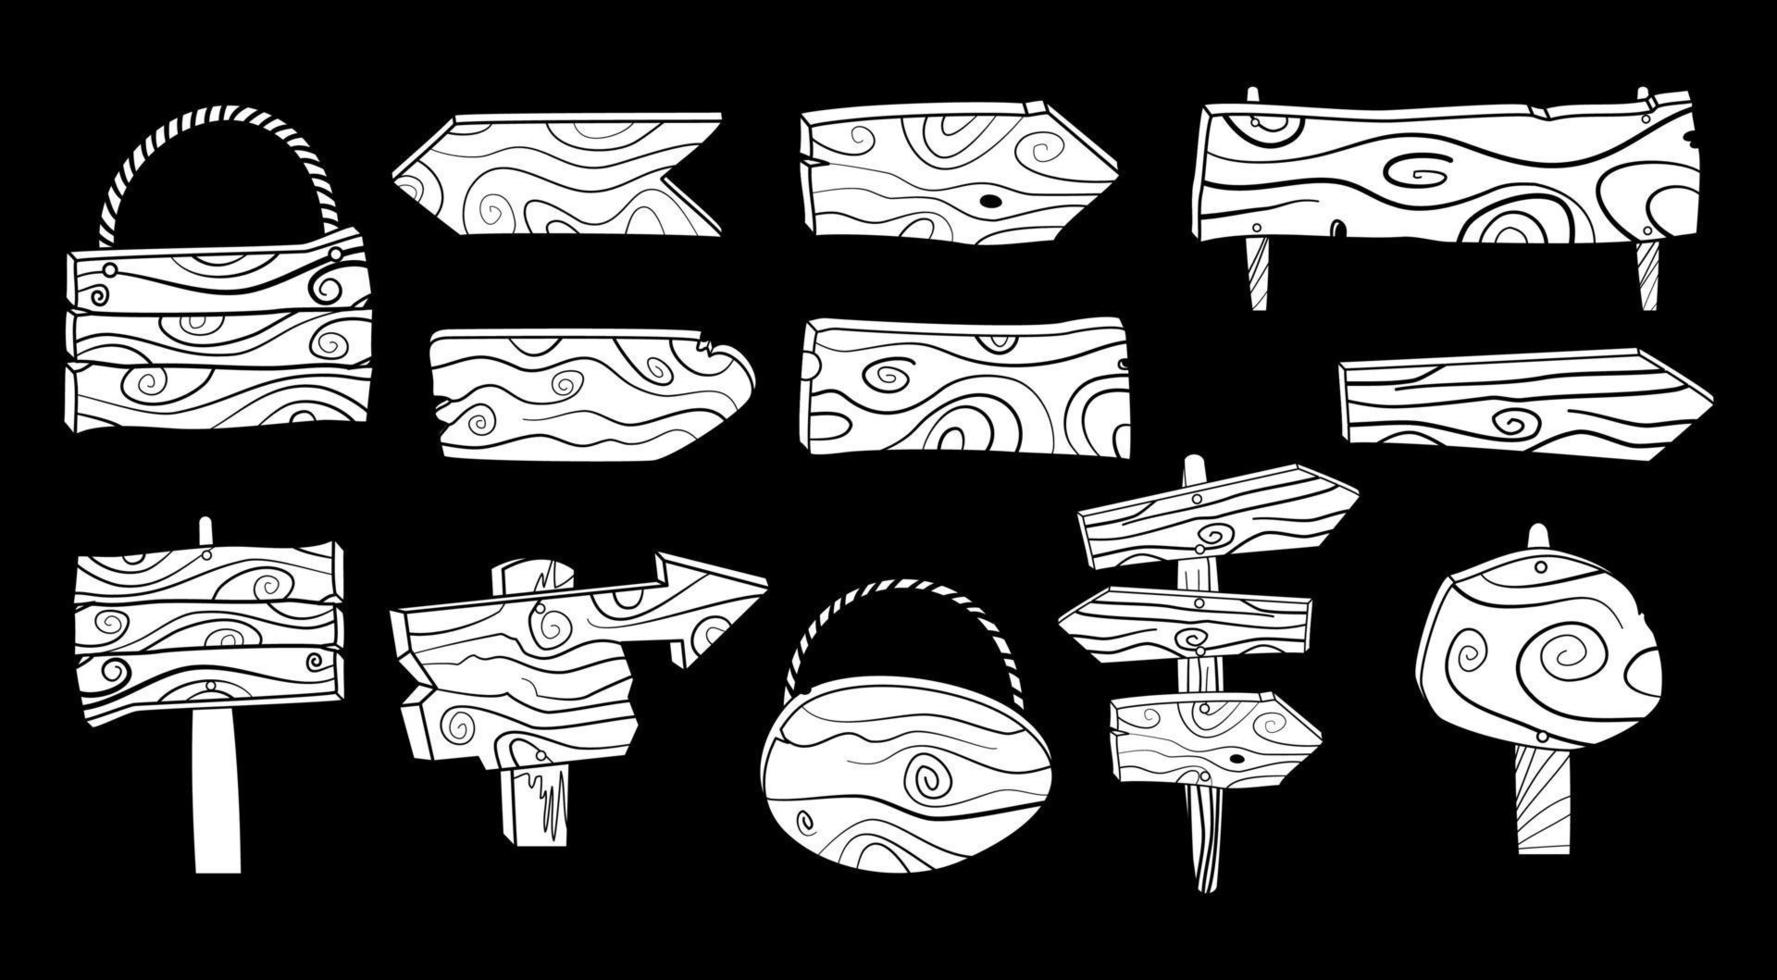 signos de doodle de madera en blanco en blanco y negro vector